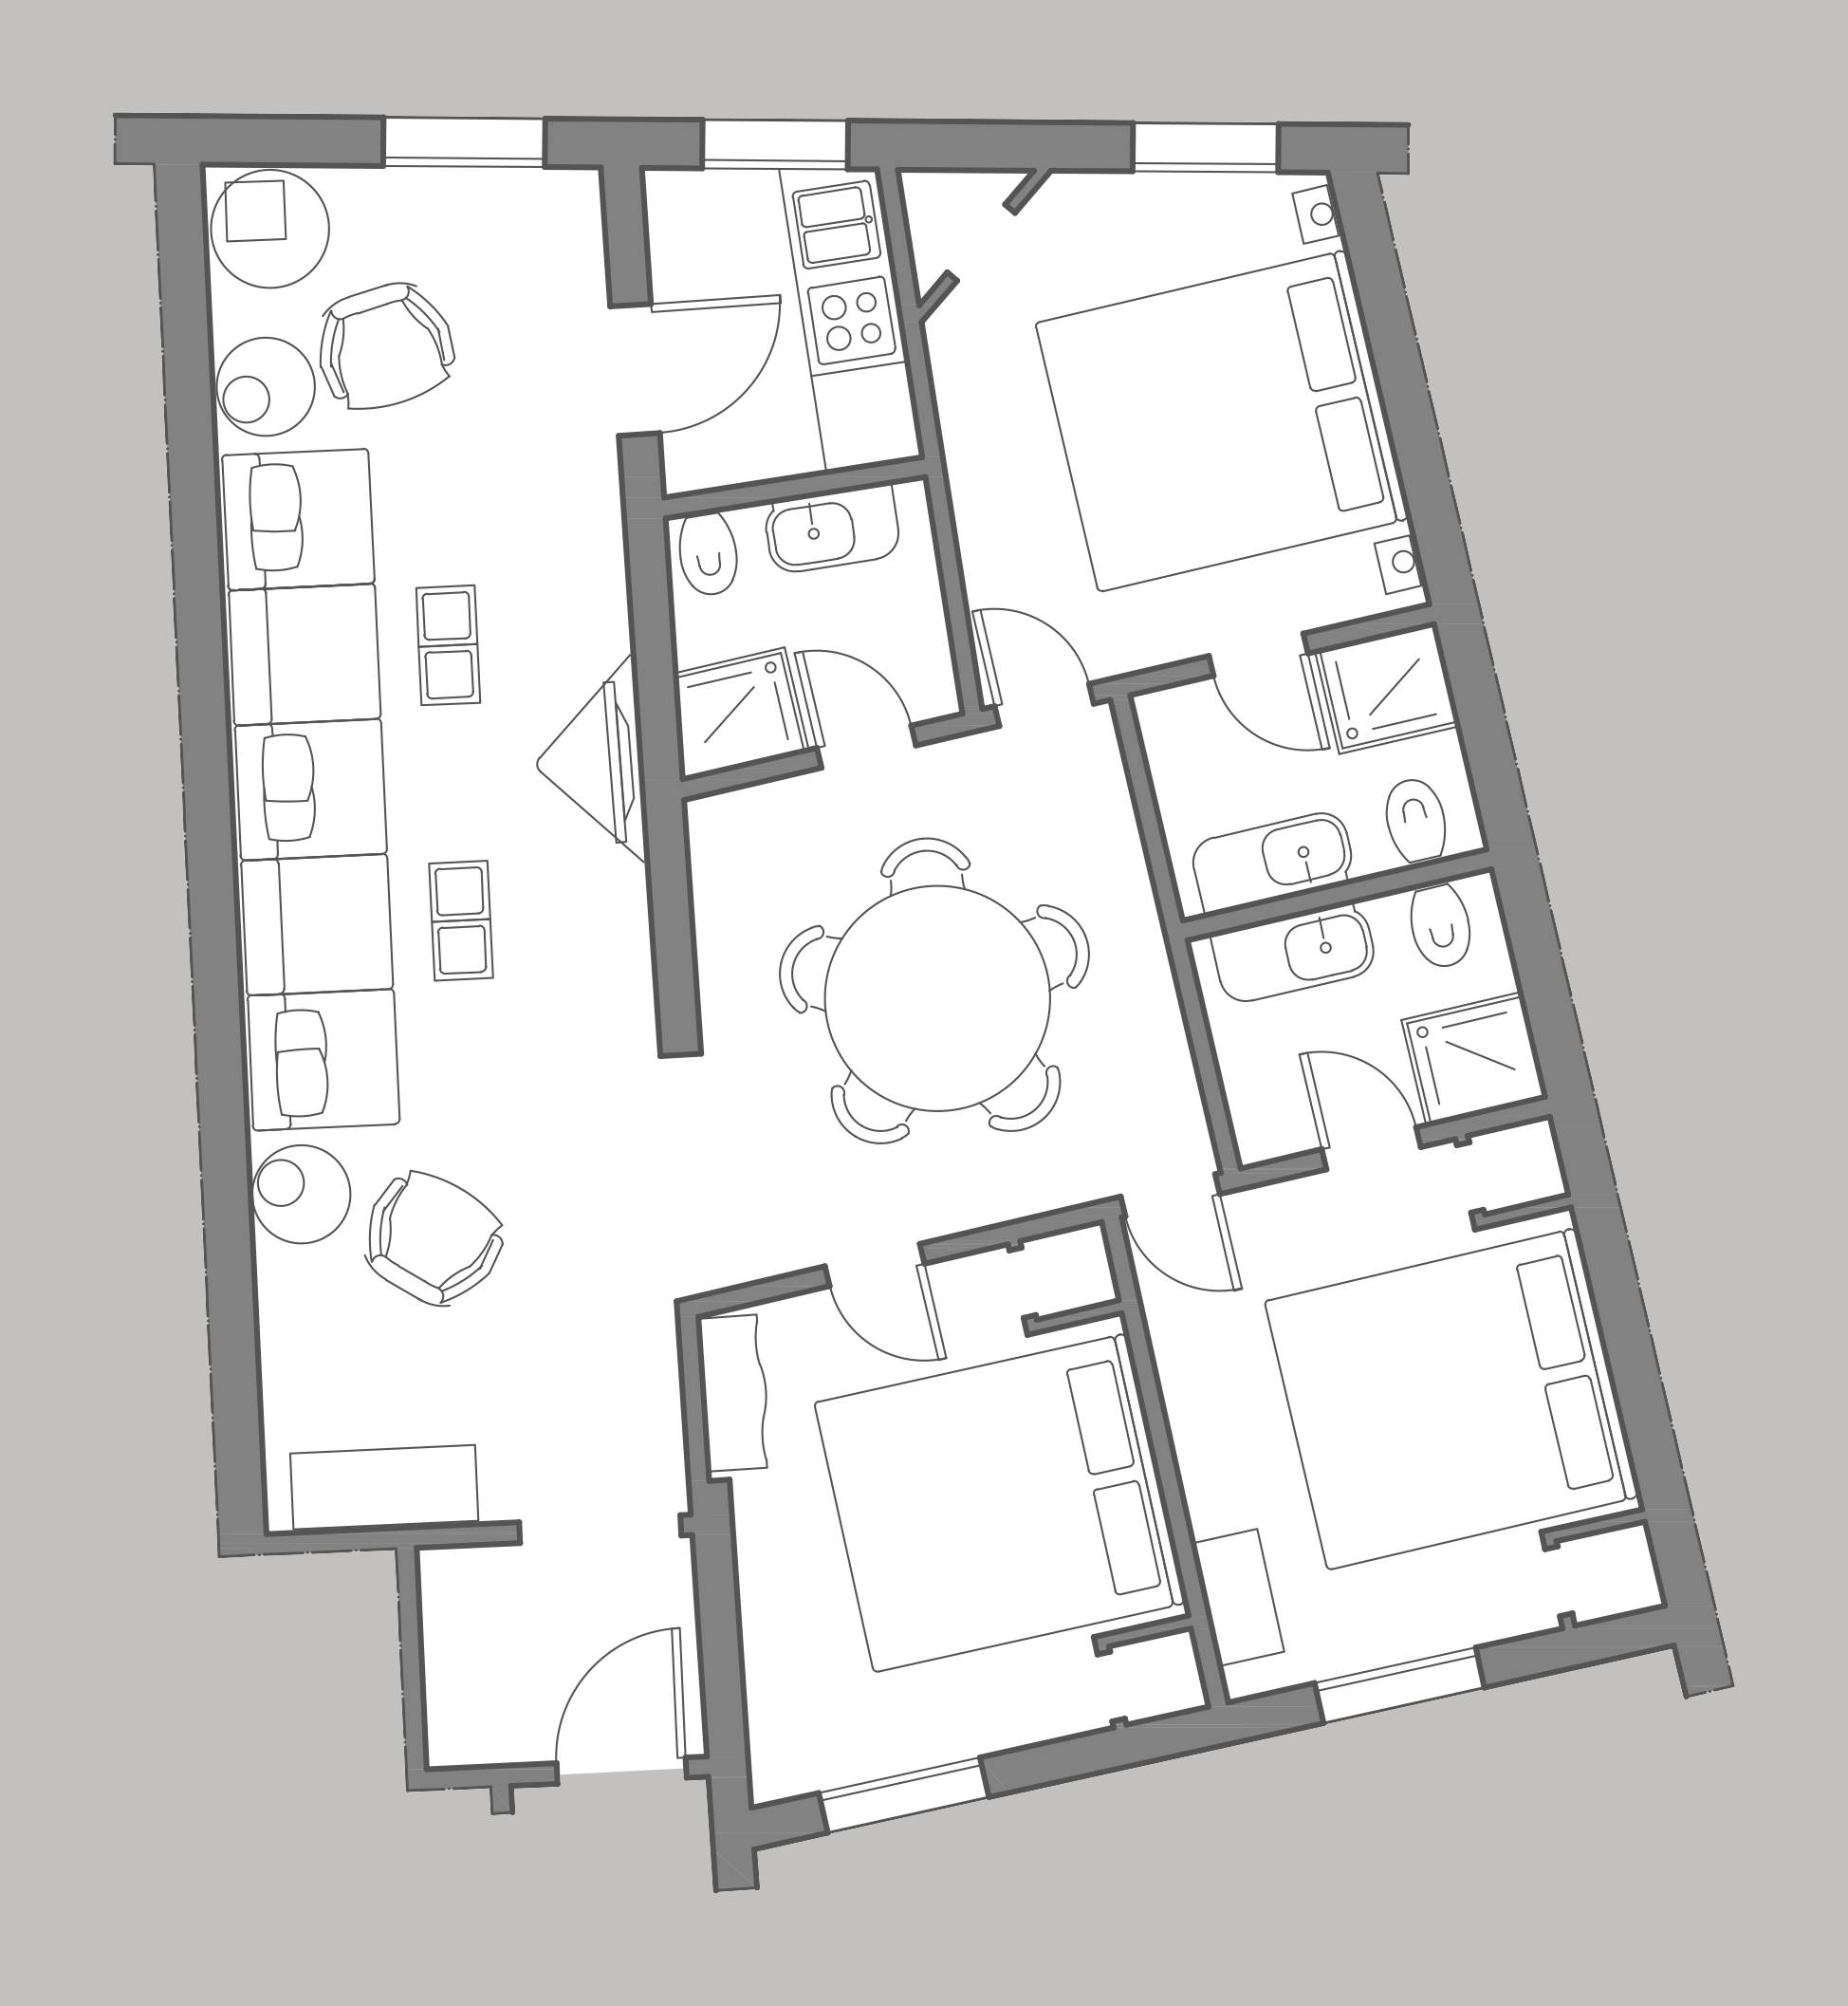 Albrizzi floor plan